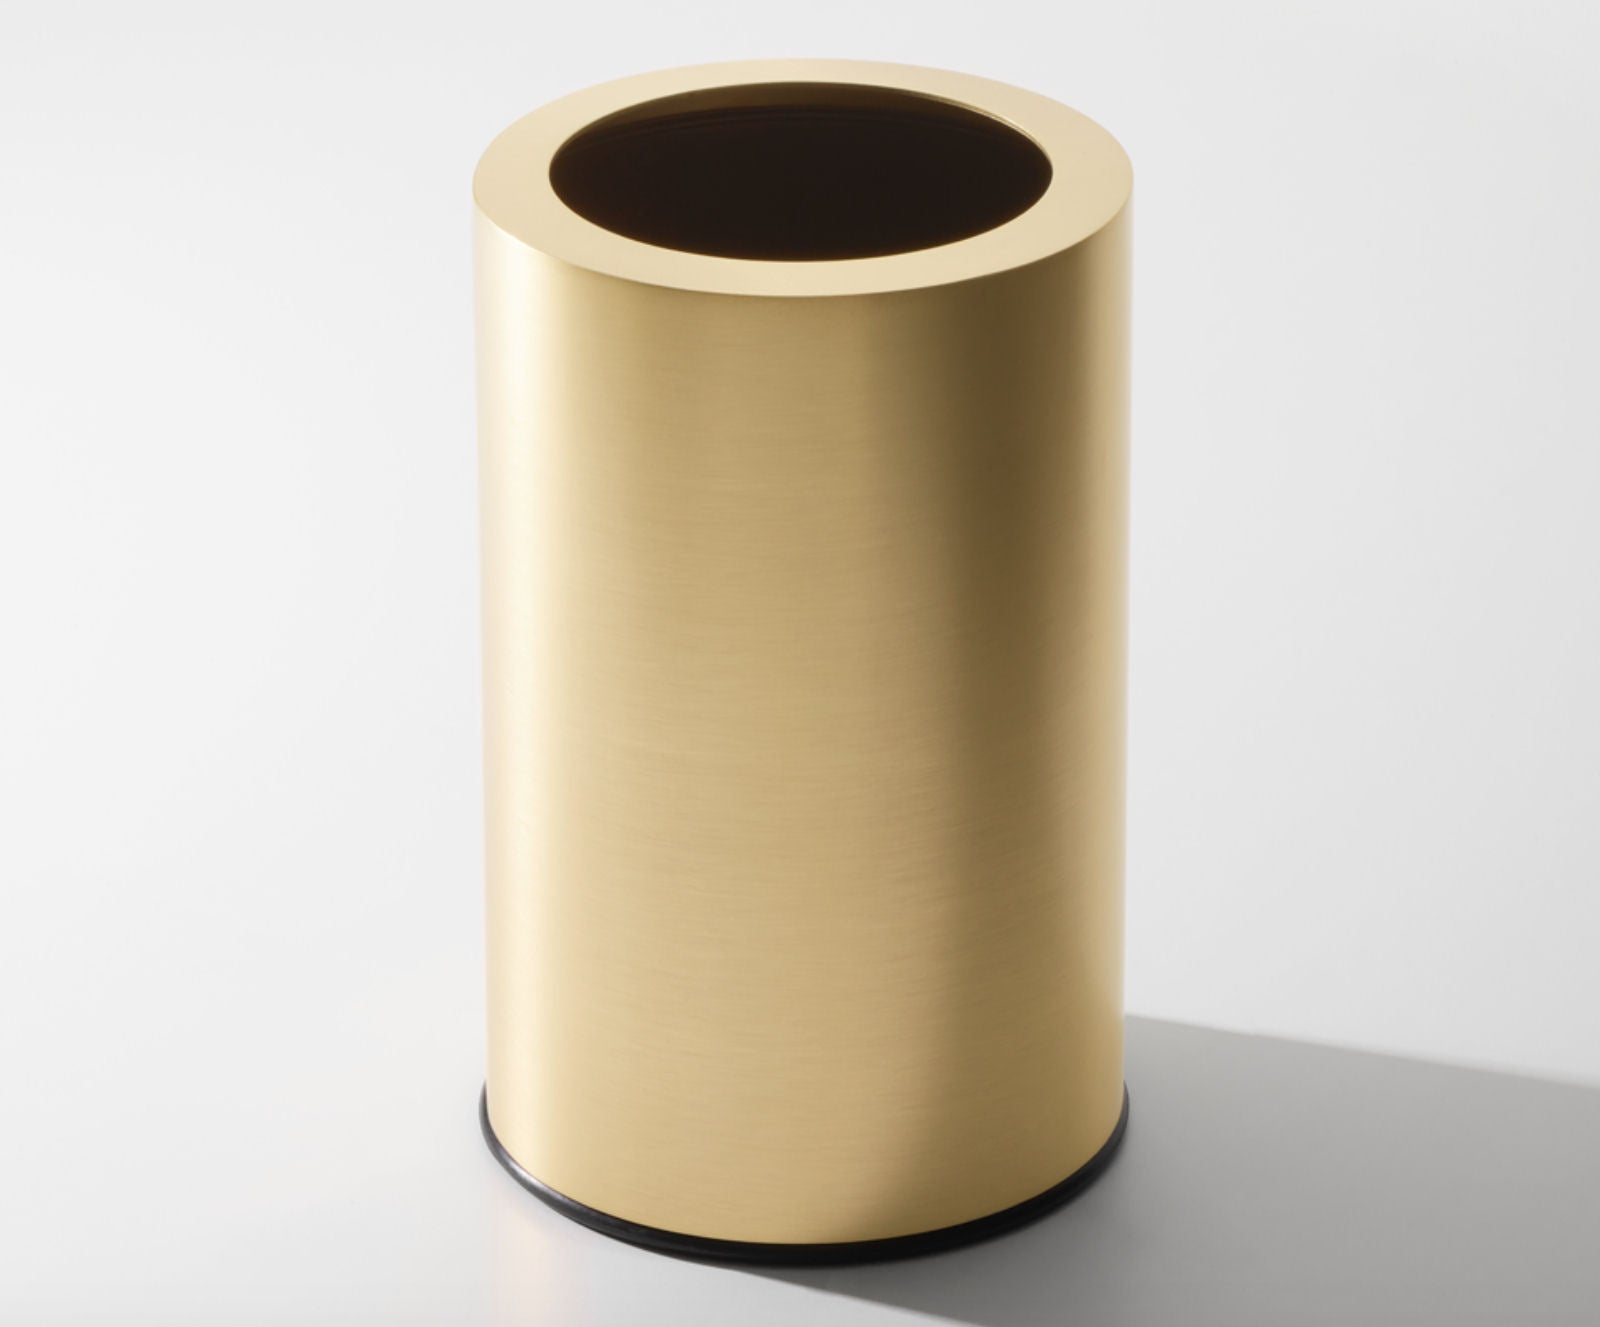 Matt Gold Room Paper Bin by Decor Walther - |VESIMI Design|